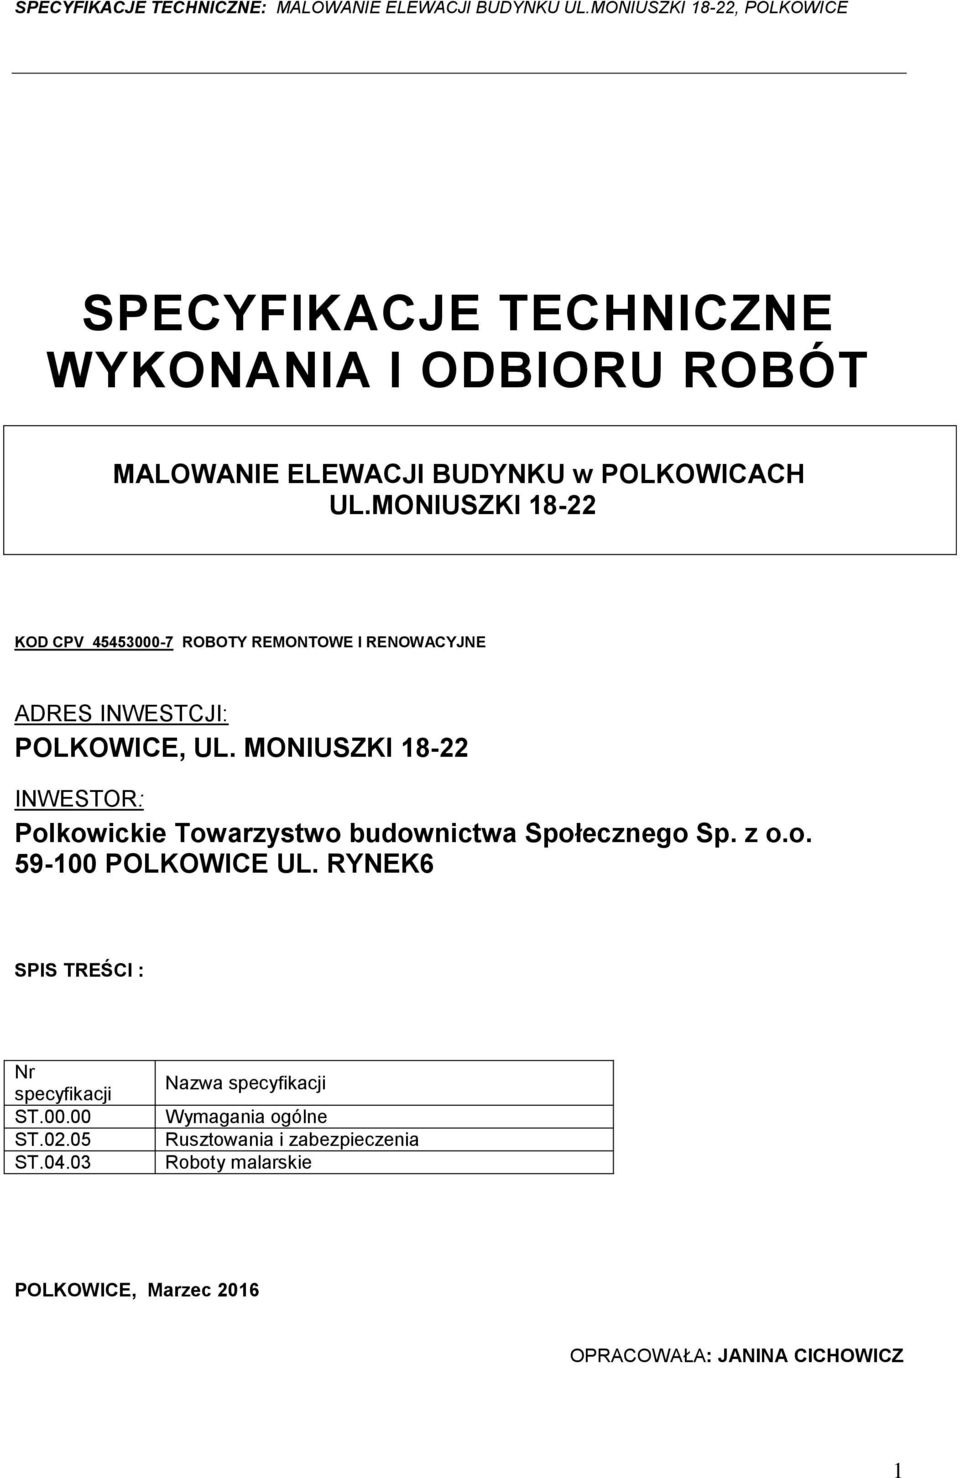 MONIUSZKI 18-22 INWESTOR: Plkwickie Twarzystw budwnictwa Spłeczneg Sp. z.. 59-100 POLKOWICE UL.